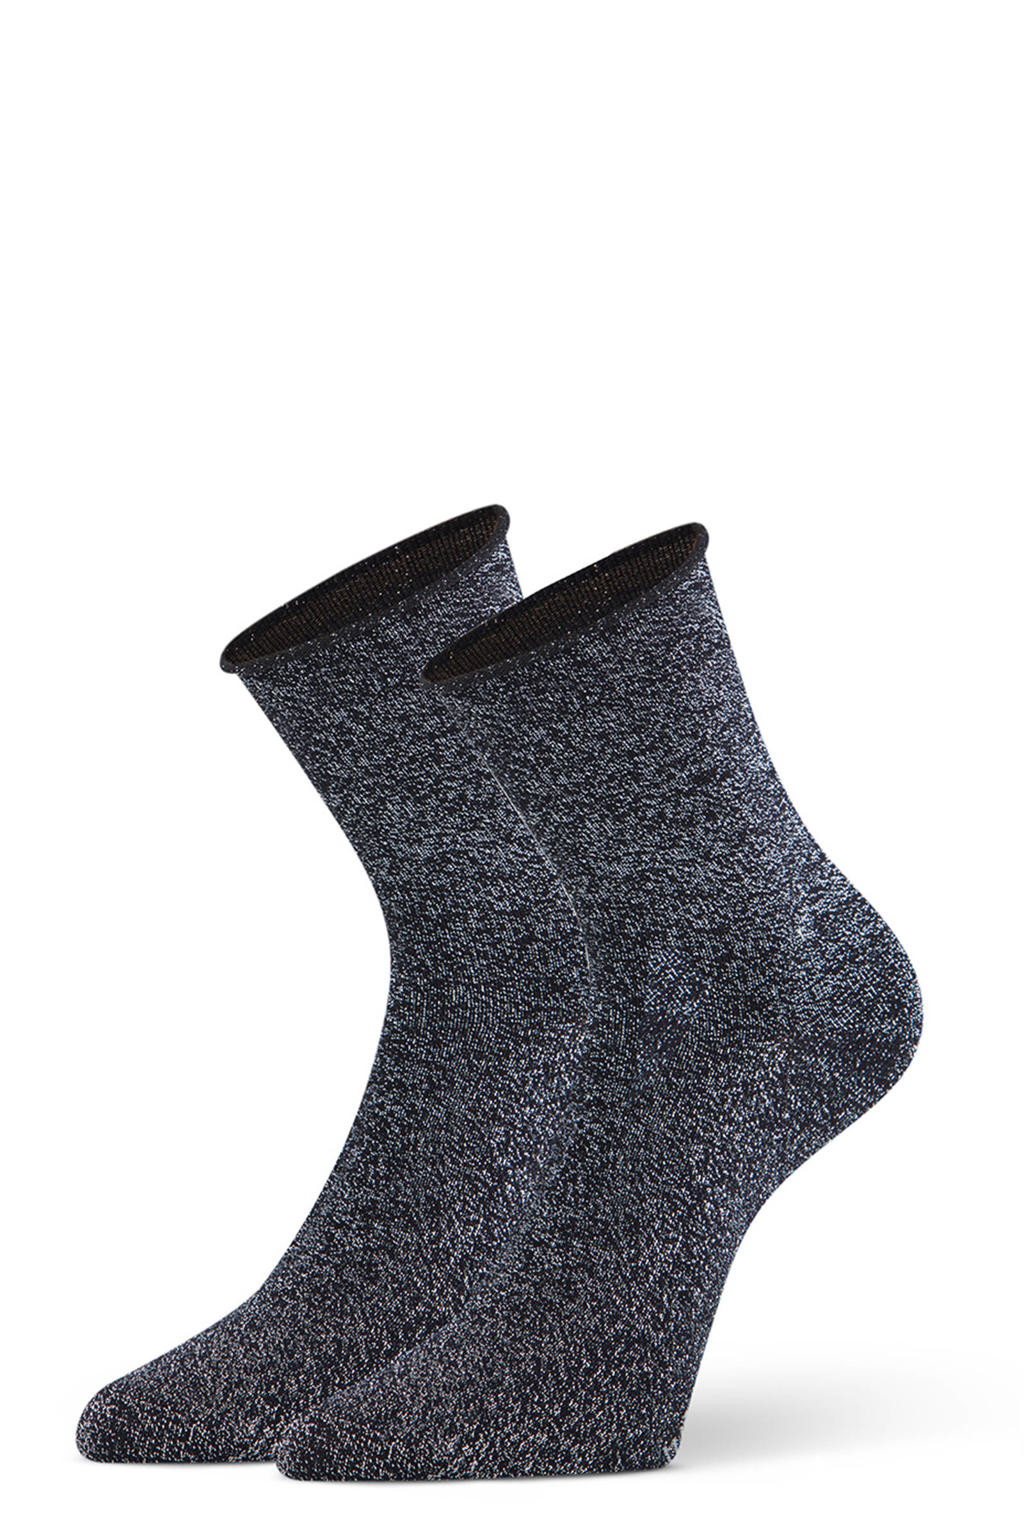 Marcmarcs sokken Blackpool - set van 2 zwart/zilverkleurig